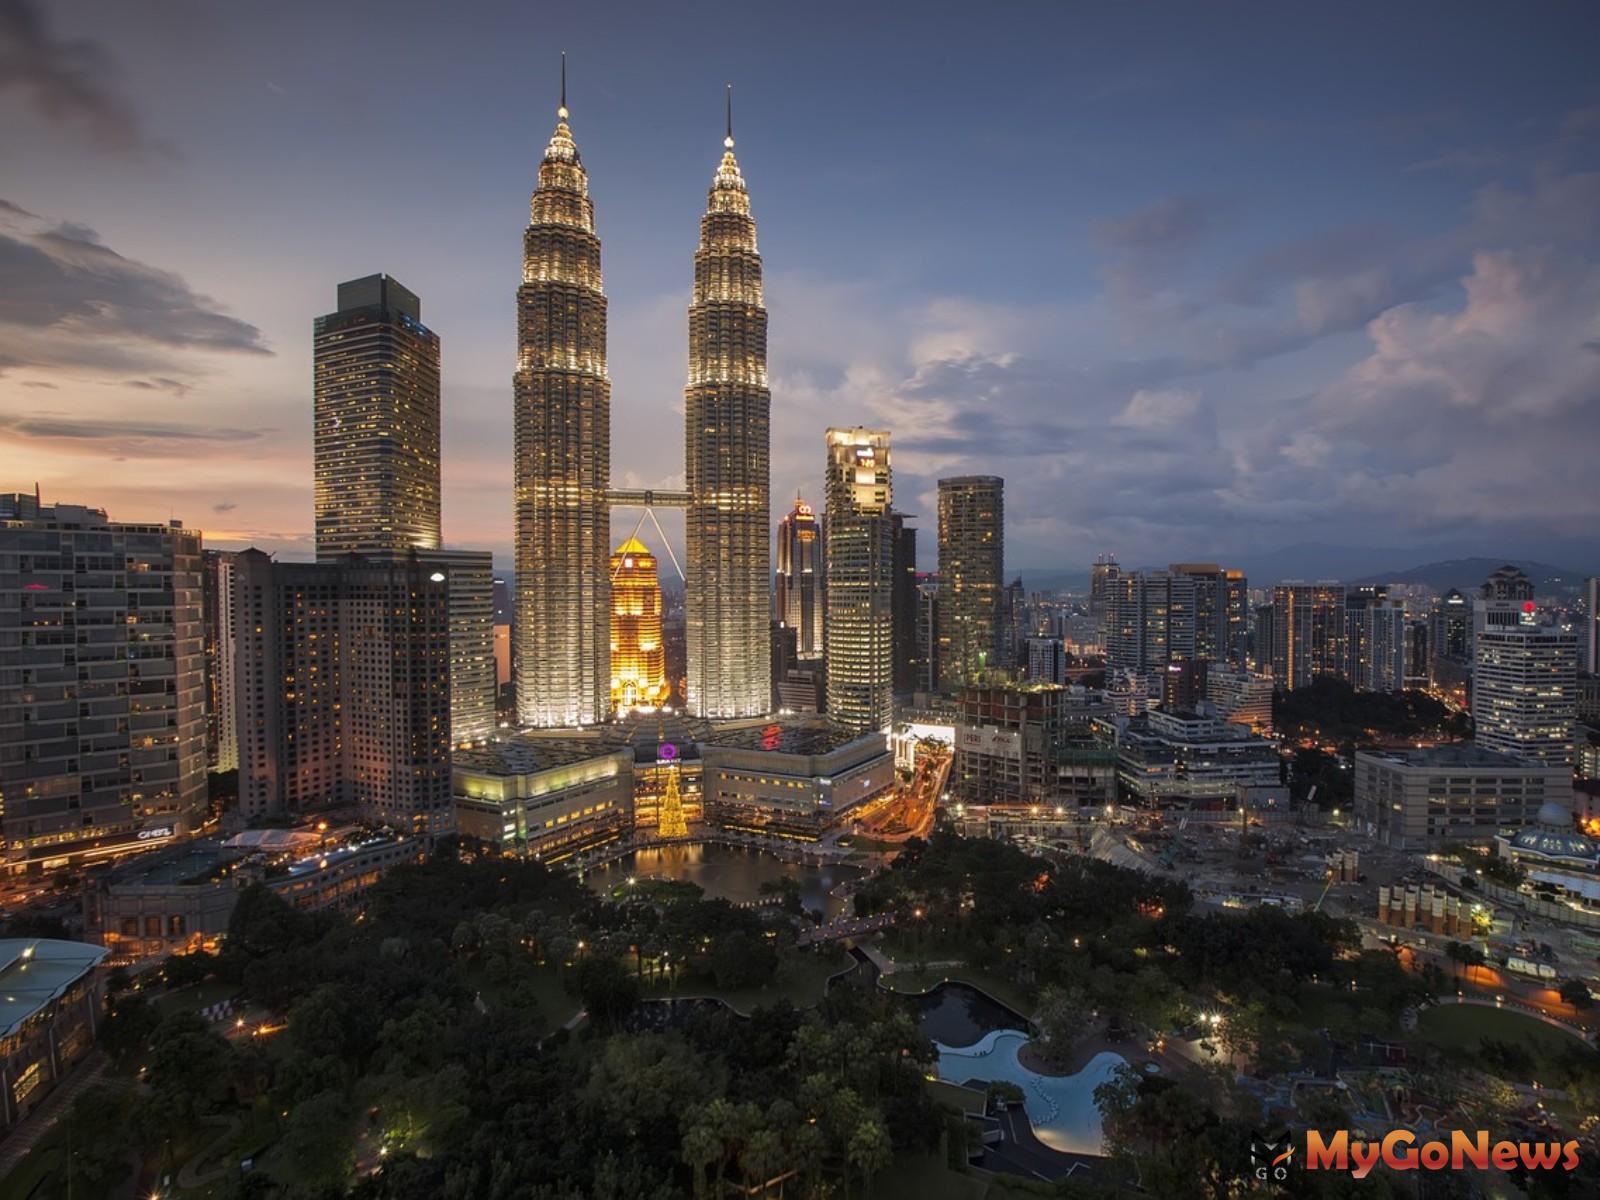 馬來西亞的移居首選城市 吉隆坡讓海外人士情有獨鍾